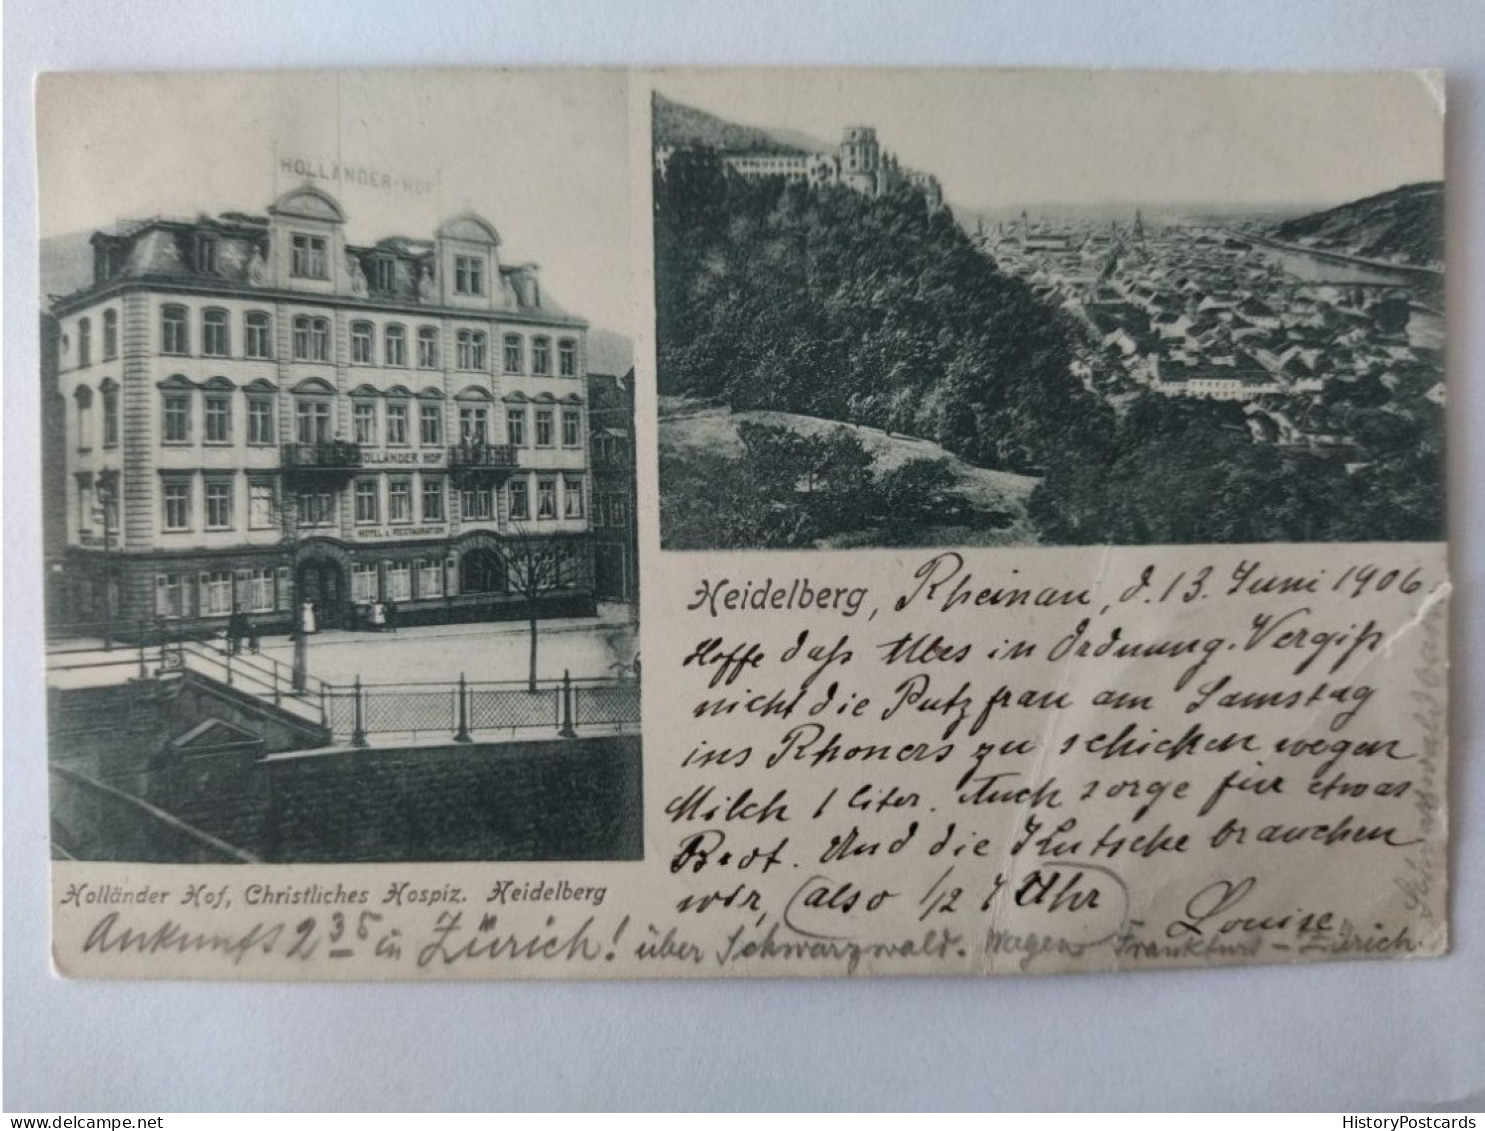 Heidelberg, Hotel Holländer Hof, Hospiz, Bahnpost, 1906 - Heidelberg